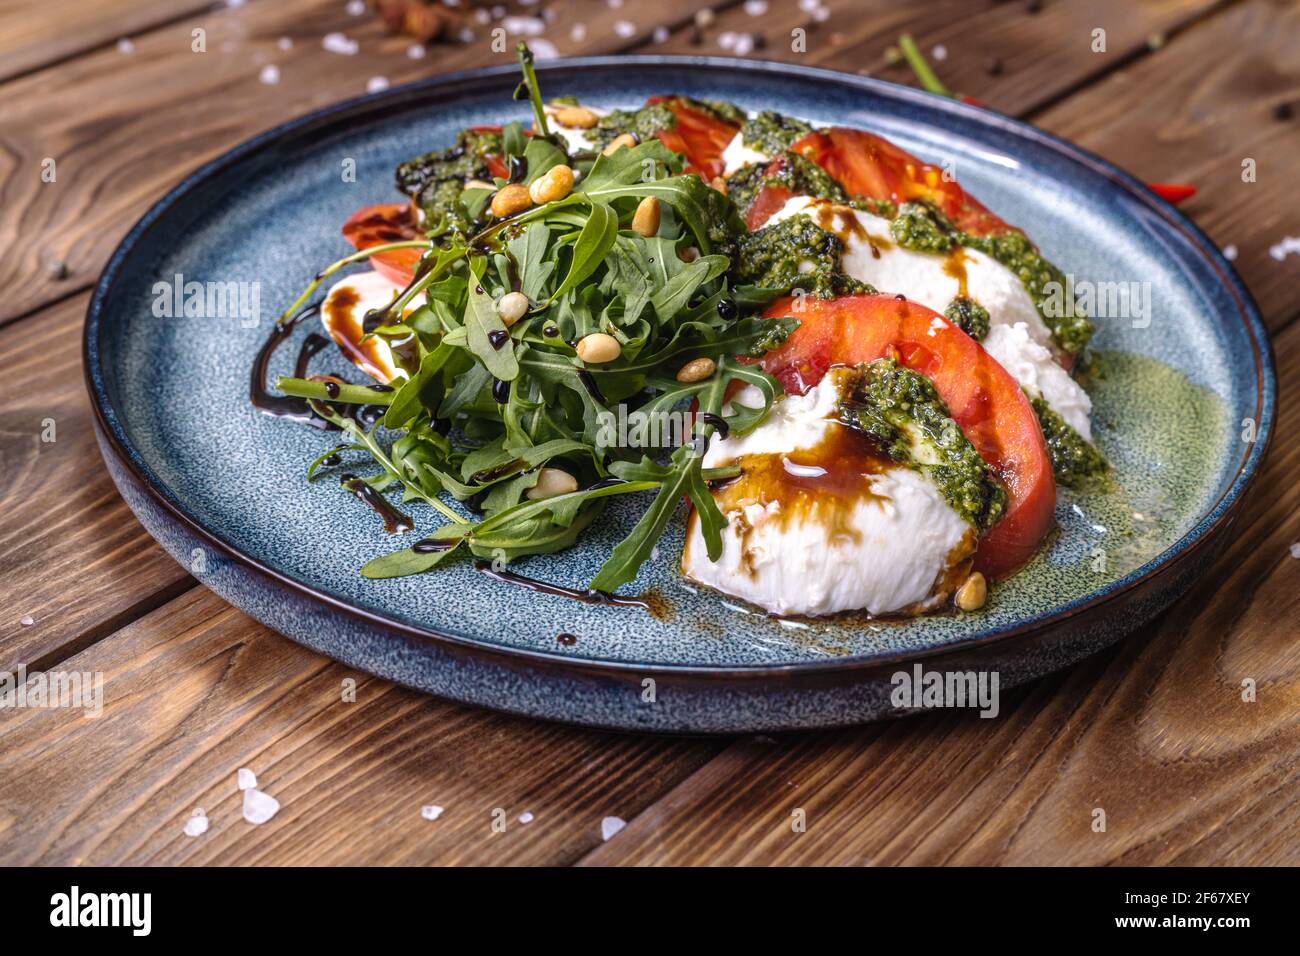 Tomatenscheiben und Mozzarella liegen auf einem mit Kräutern gewürzten Teller, garniert mit Chili und Zimt. Stockfoto